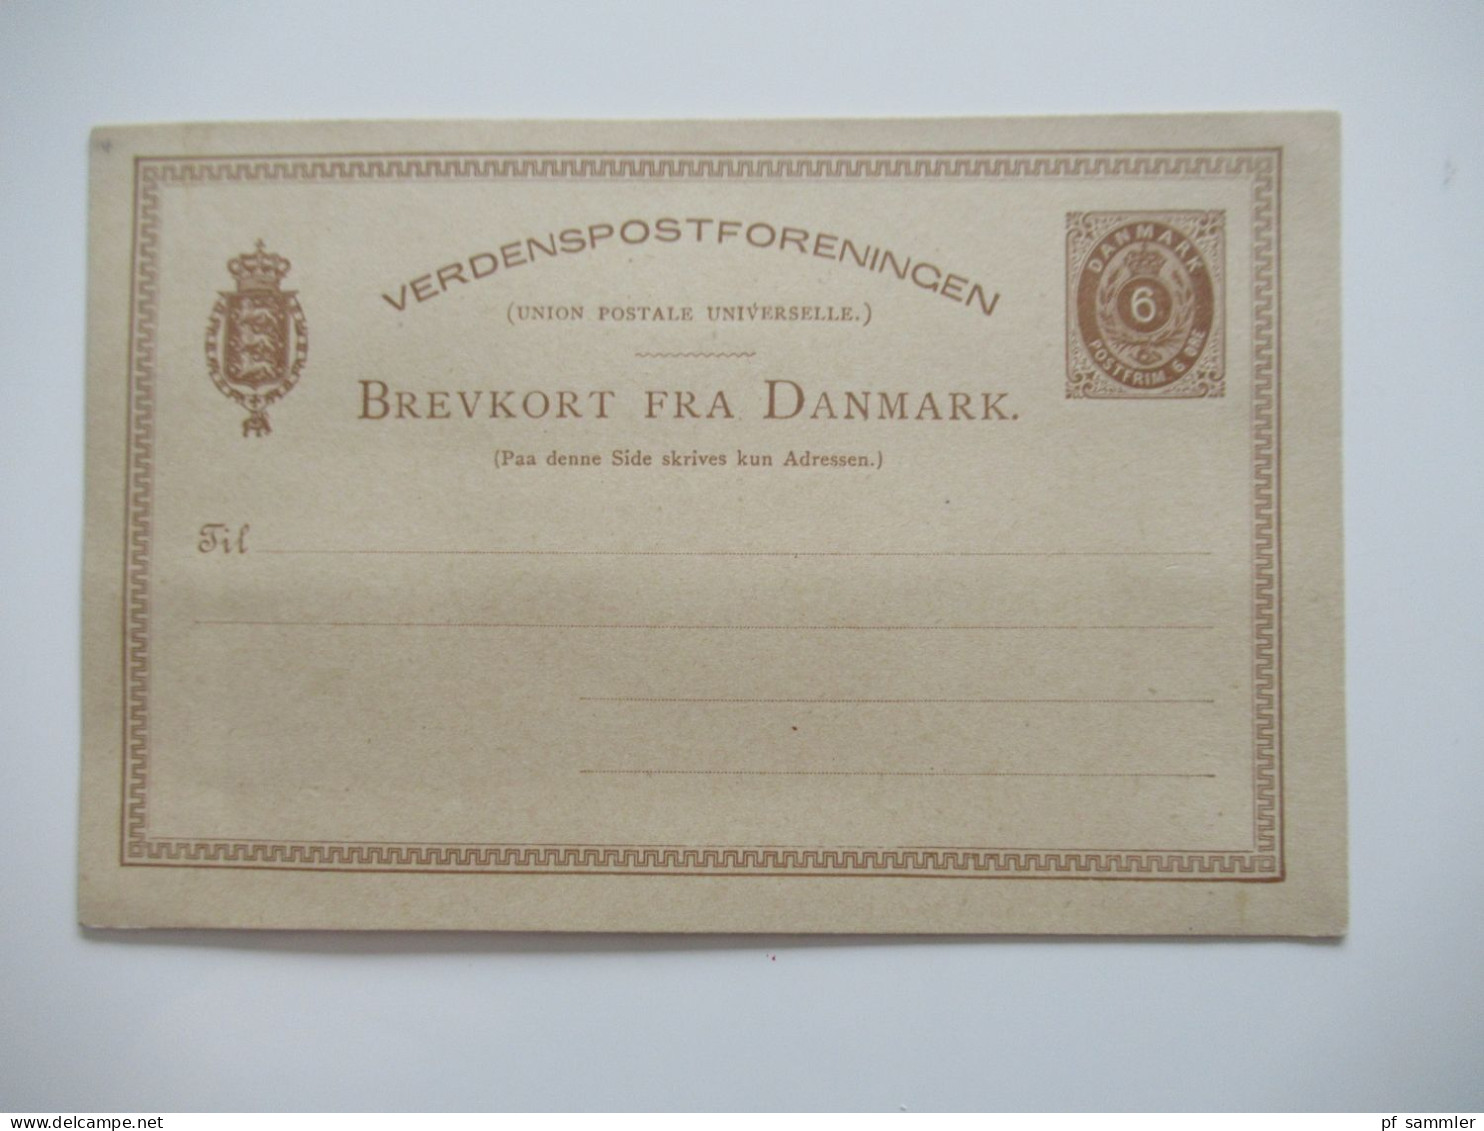 Dänemark interessanter Ganzsachen Posten ab ca.1870er Jahre / gebraucht und ungebraucht! insgesamt 14 Stück